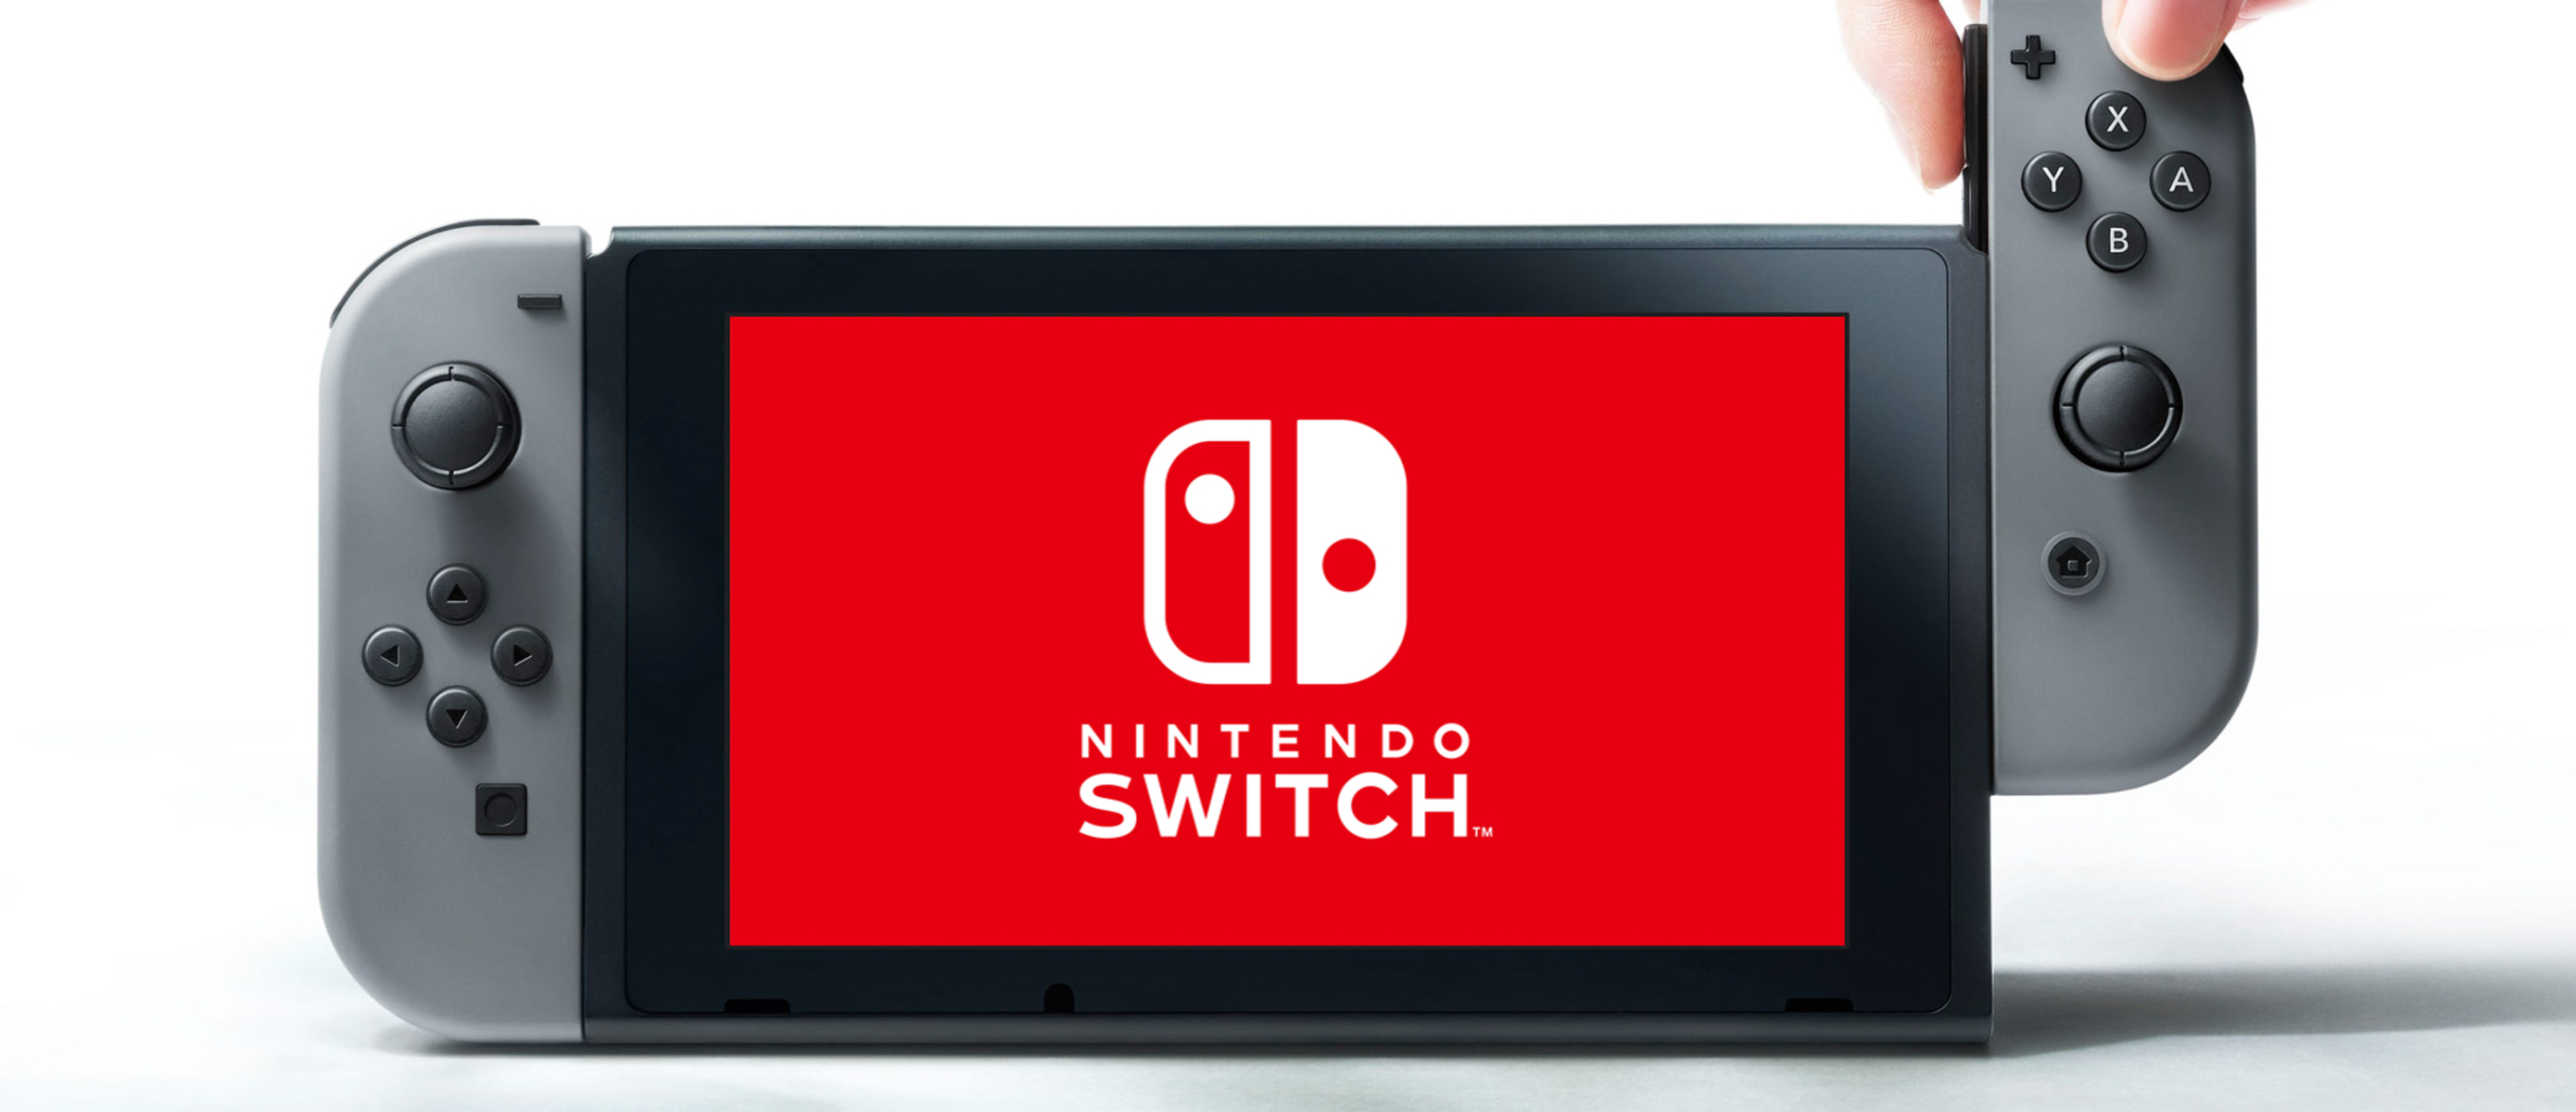 Nintendo switch life. Приставка Нинтендо свитч. Нинтендо свитч модели. Нинтендо свитч 258. Консоли лого Nintendo Switch.